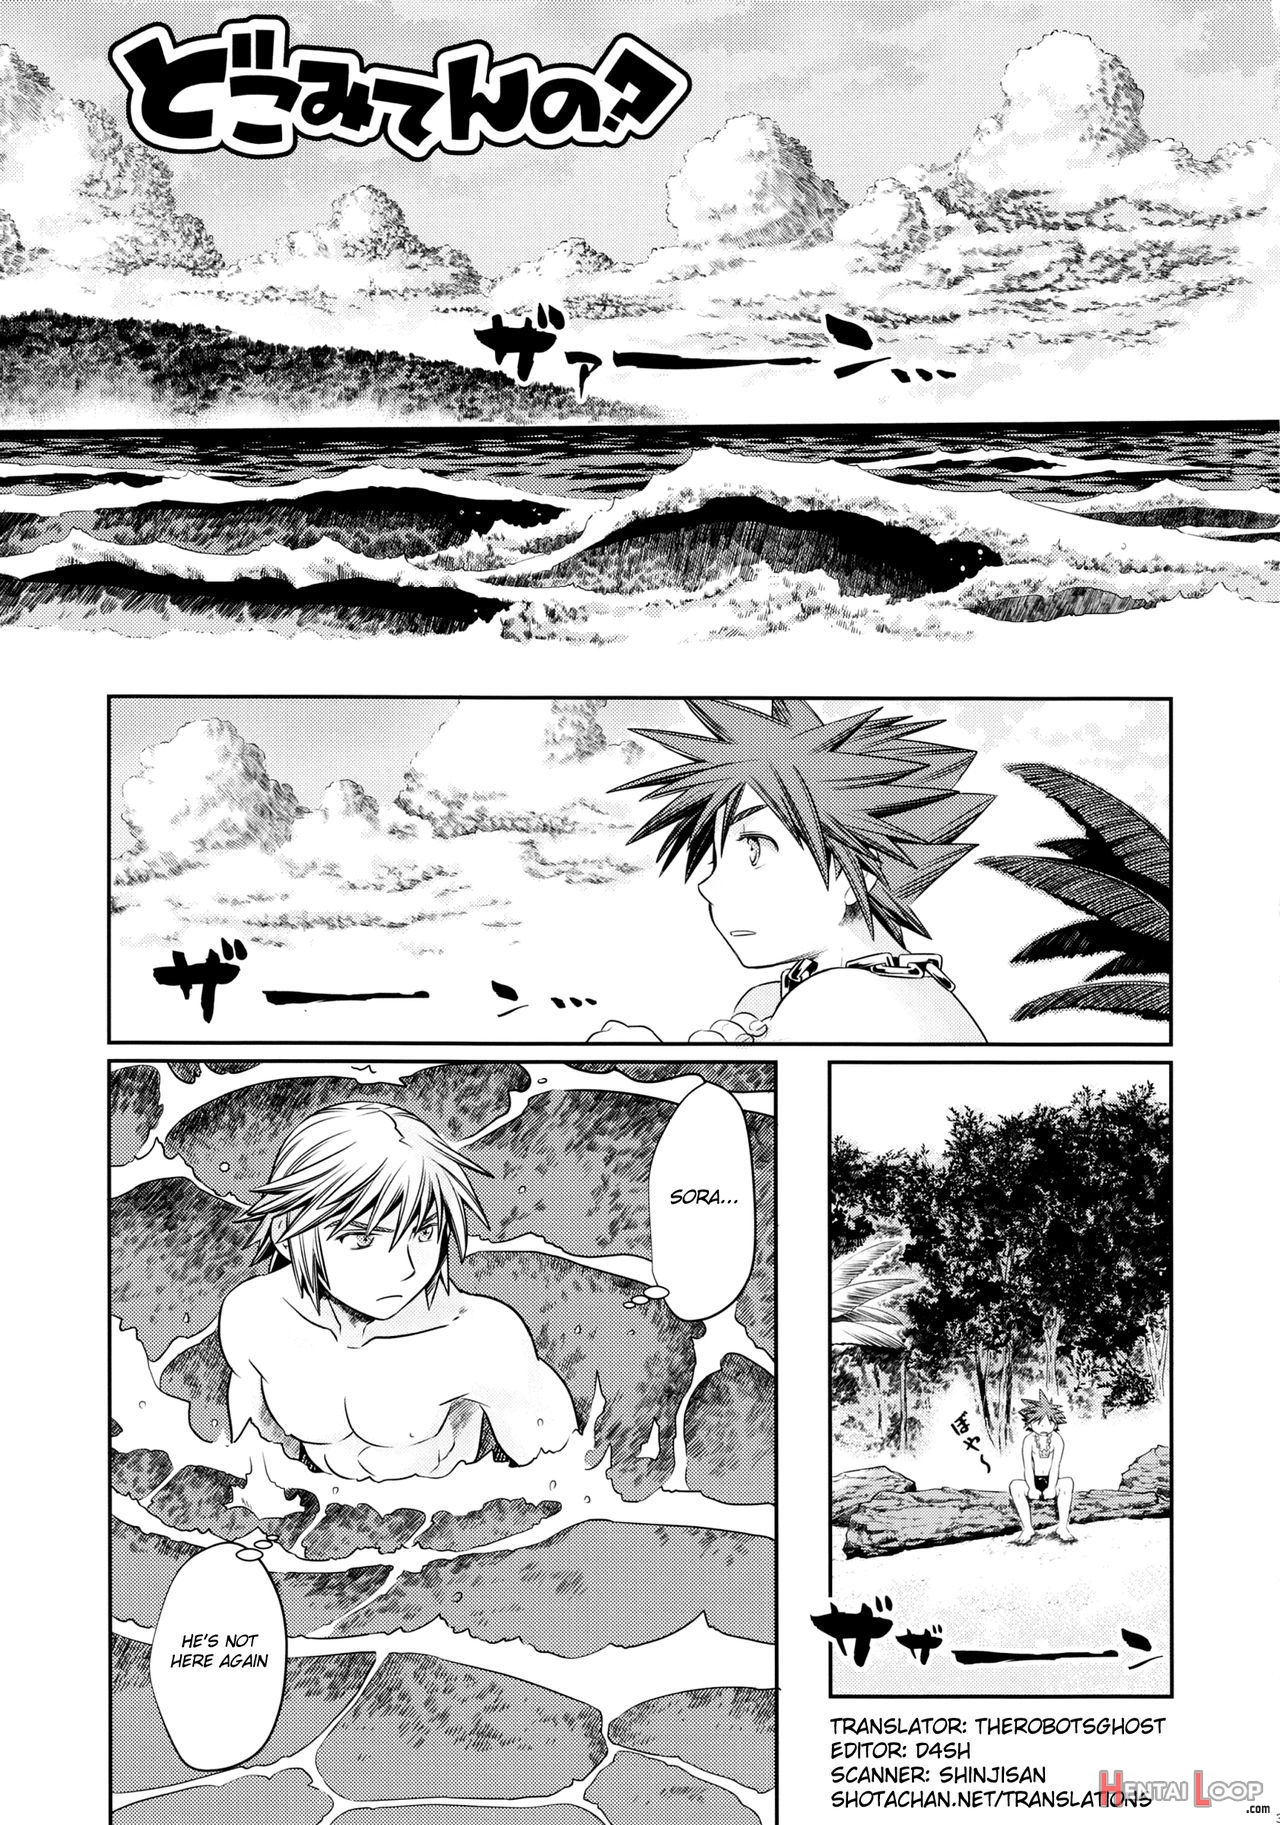 Doko Miten No page 2